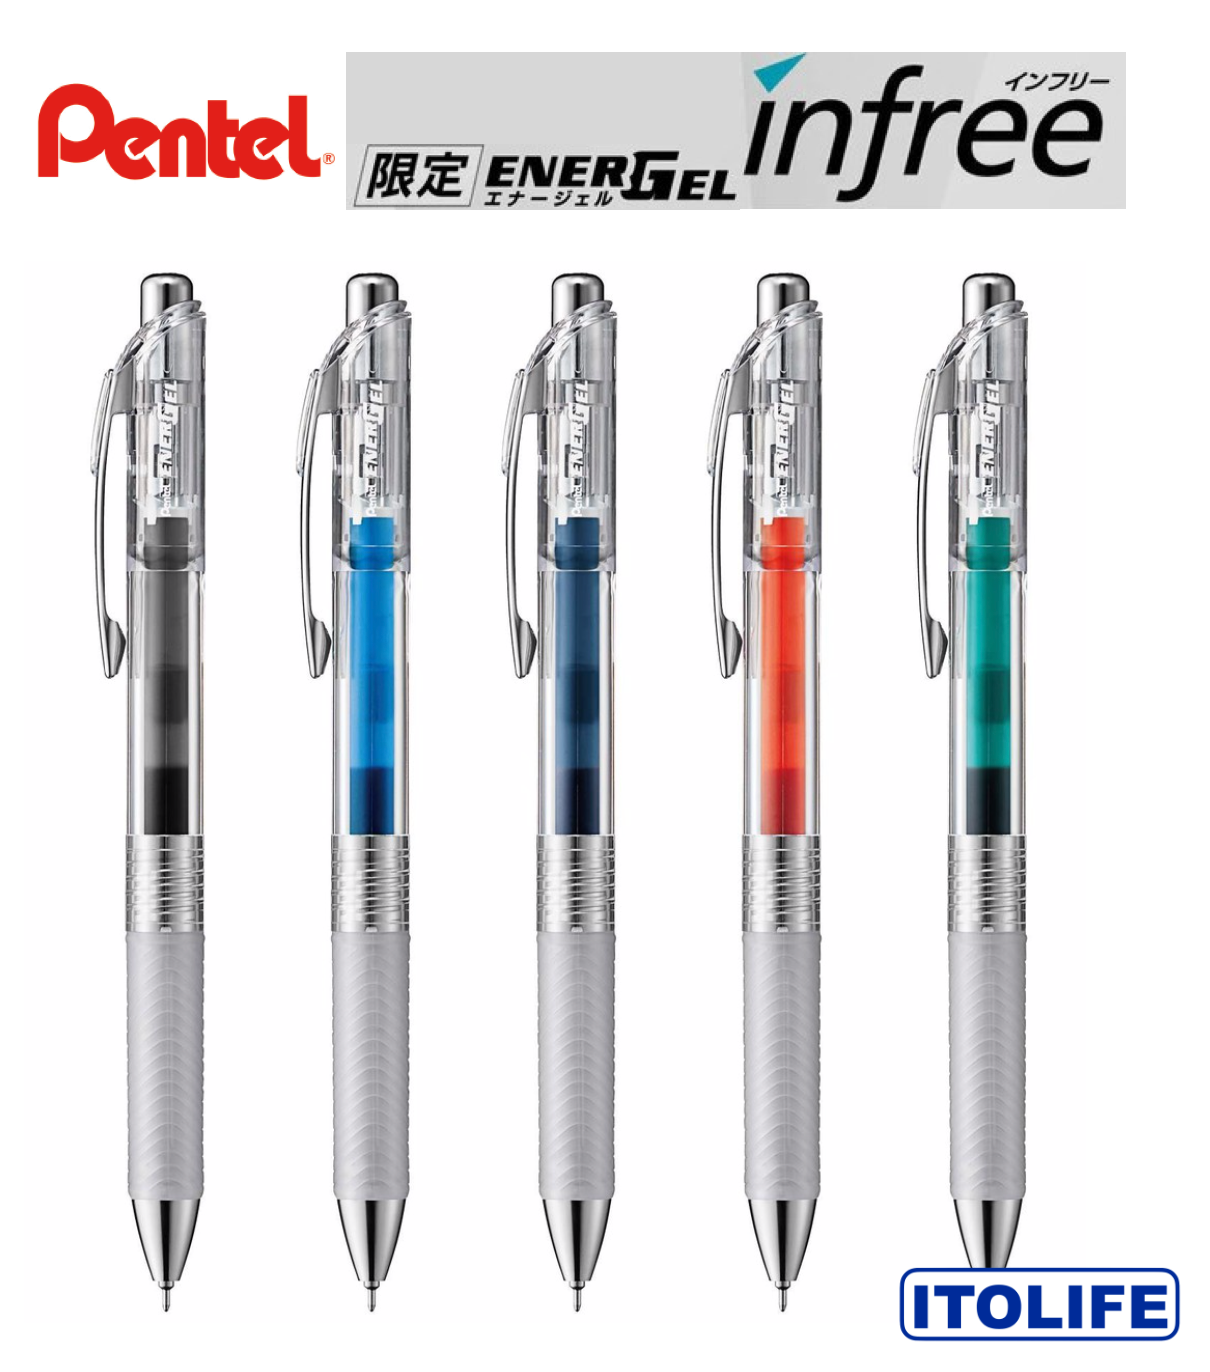 Pentel Energel Infree Needle Point Gel Pen 0.5mm BLN75TL- 1pc | Lazada PH